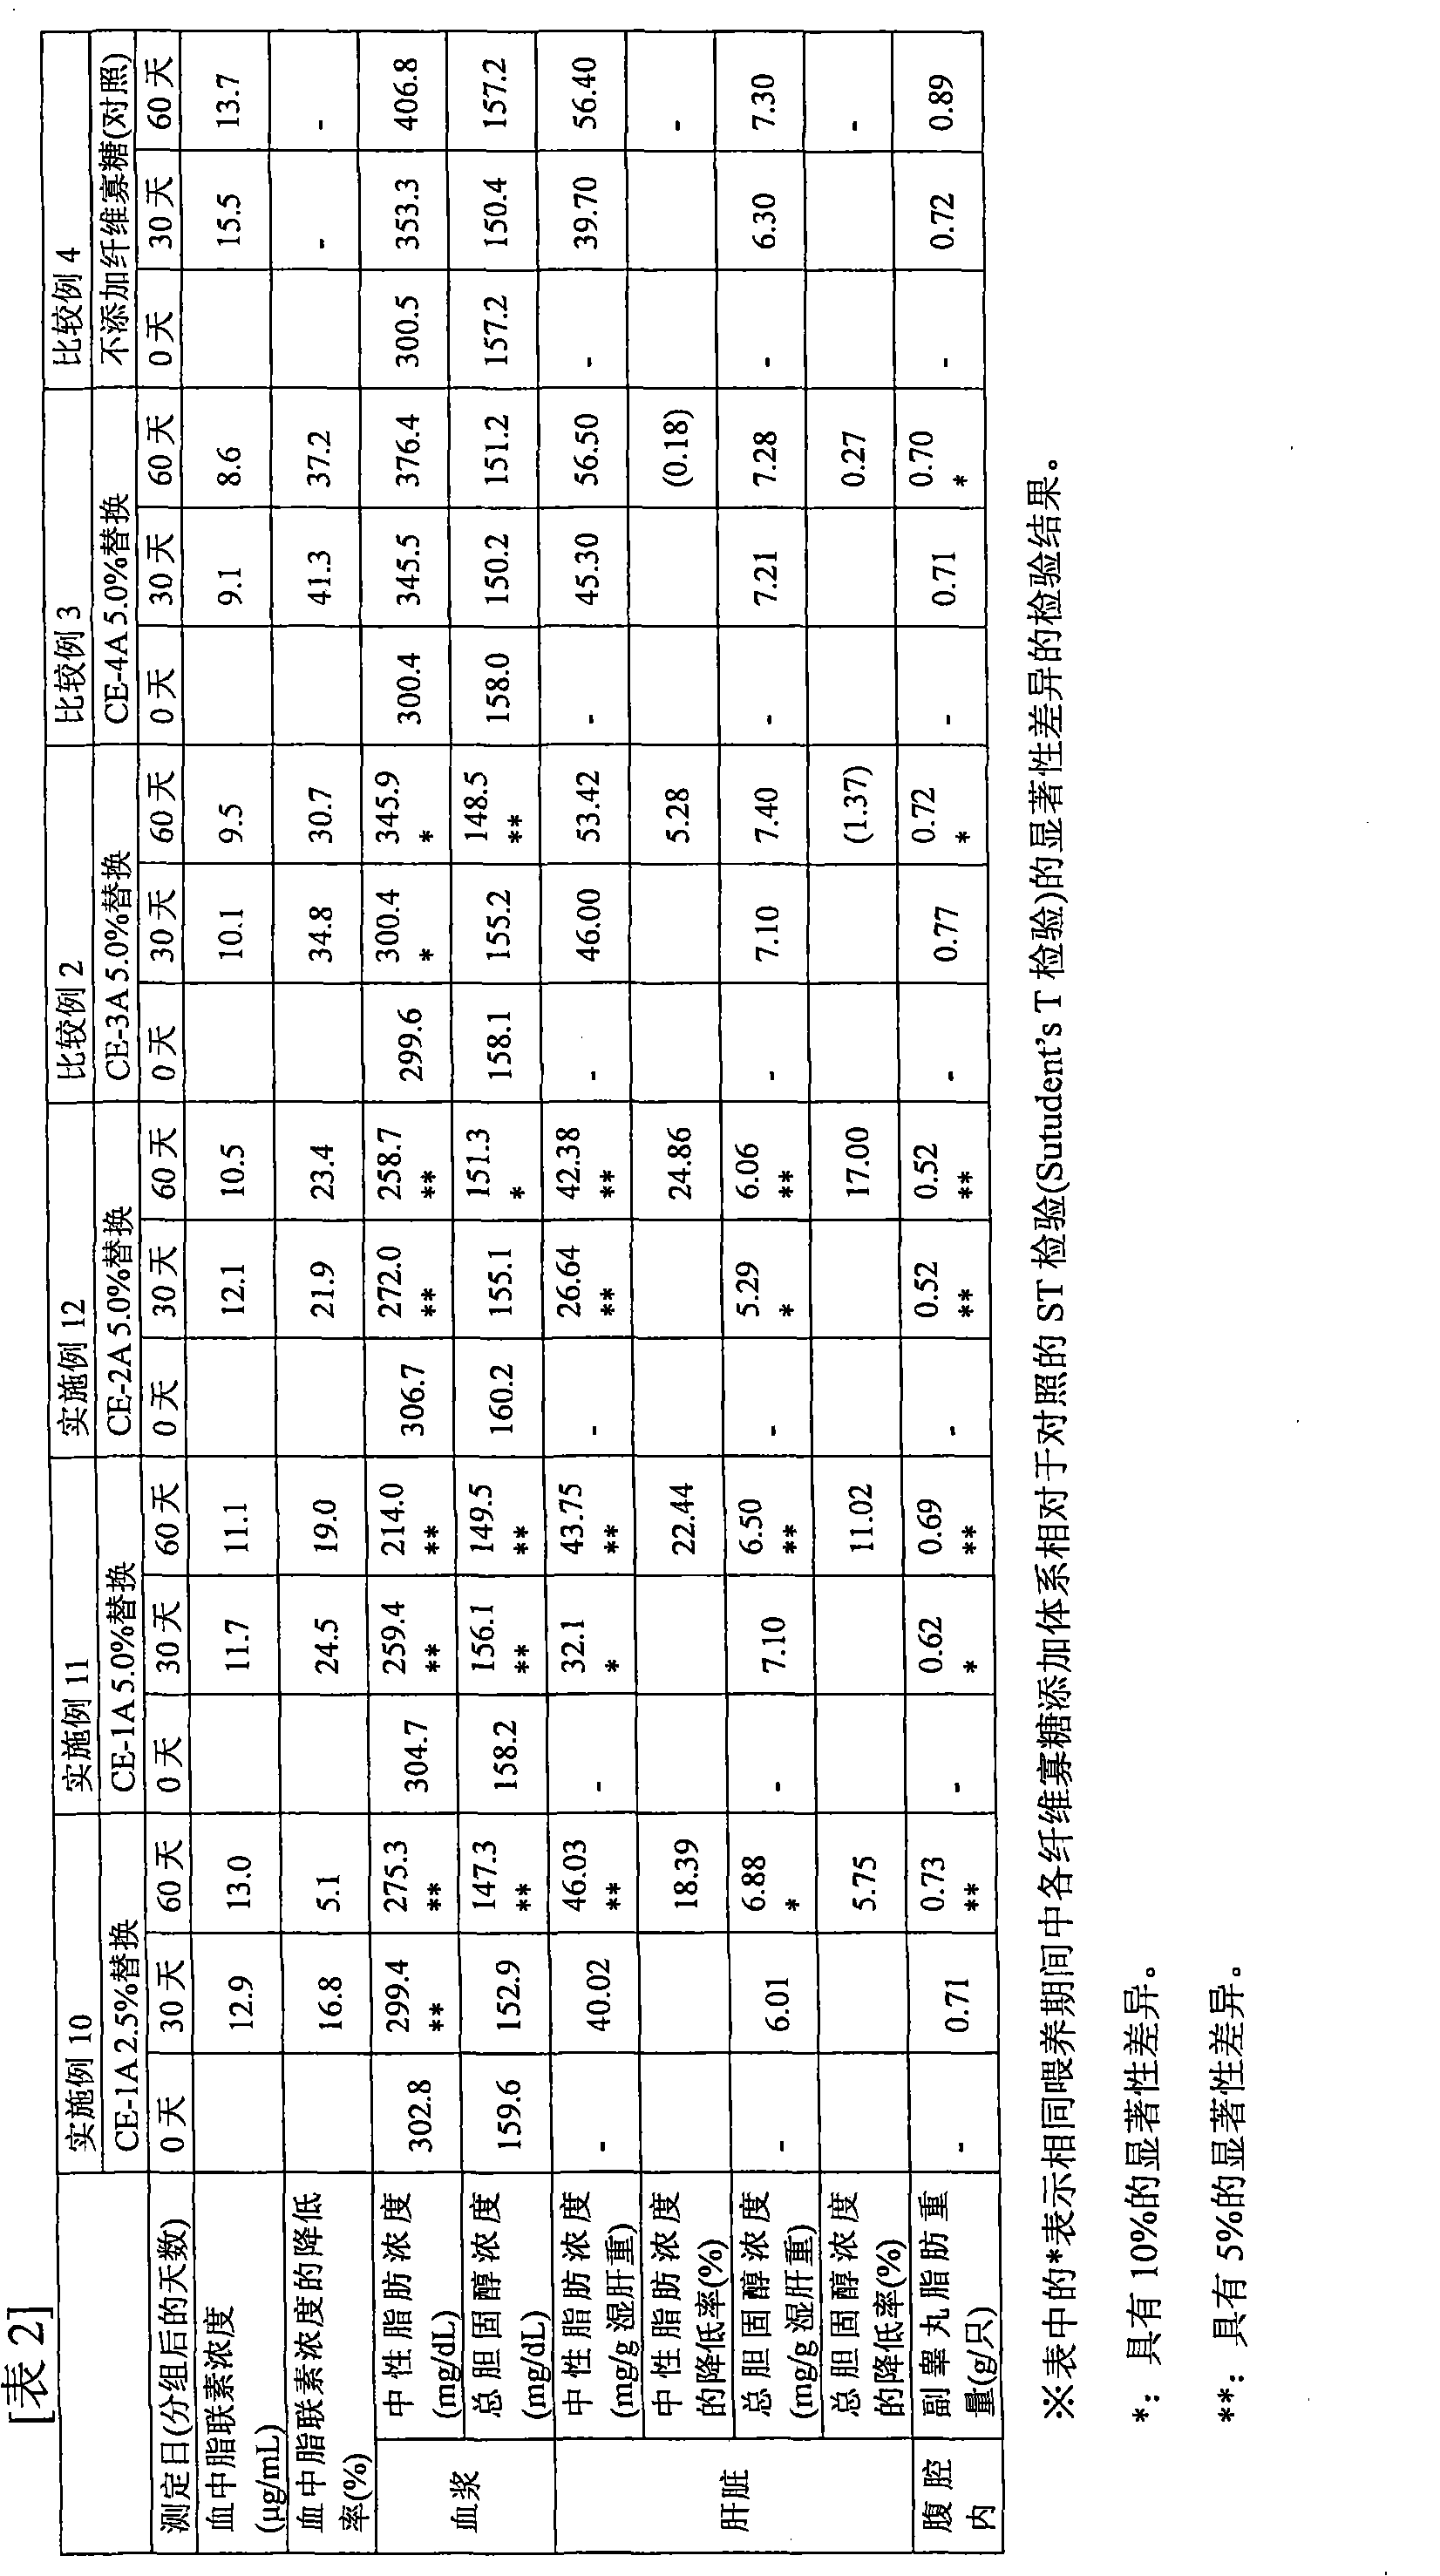 Cellooligosaccharide-containing composition